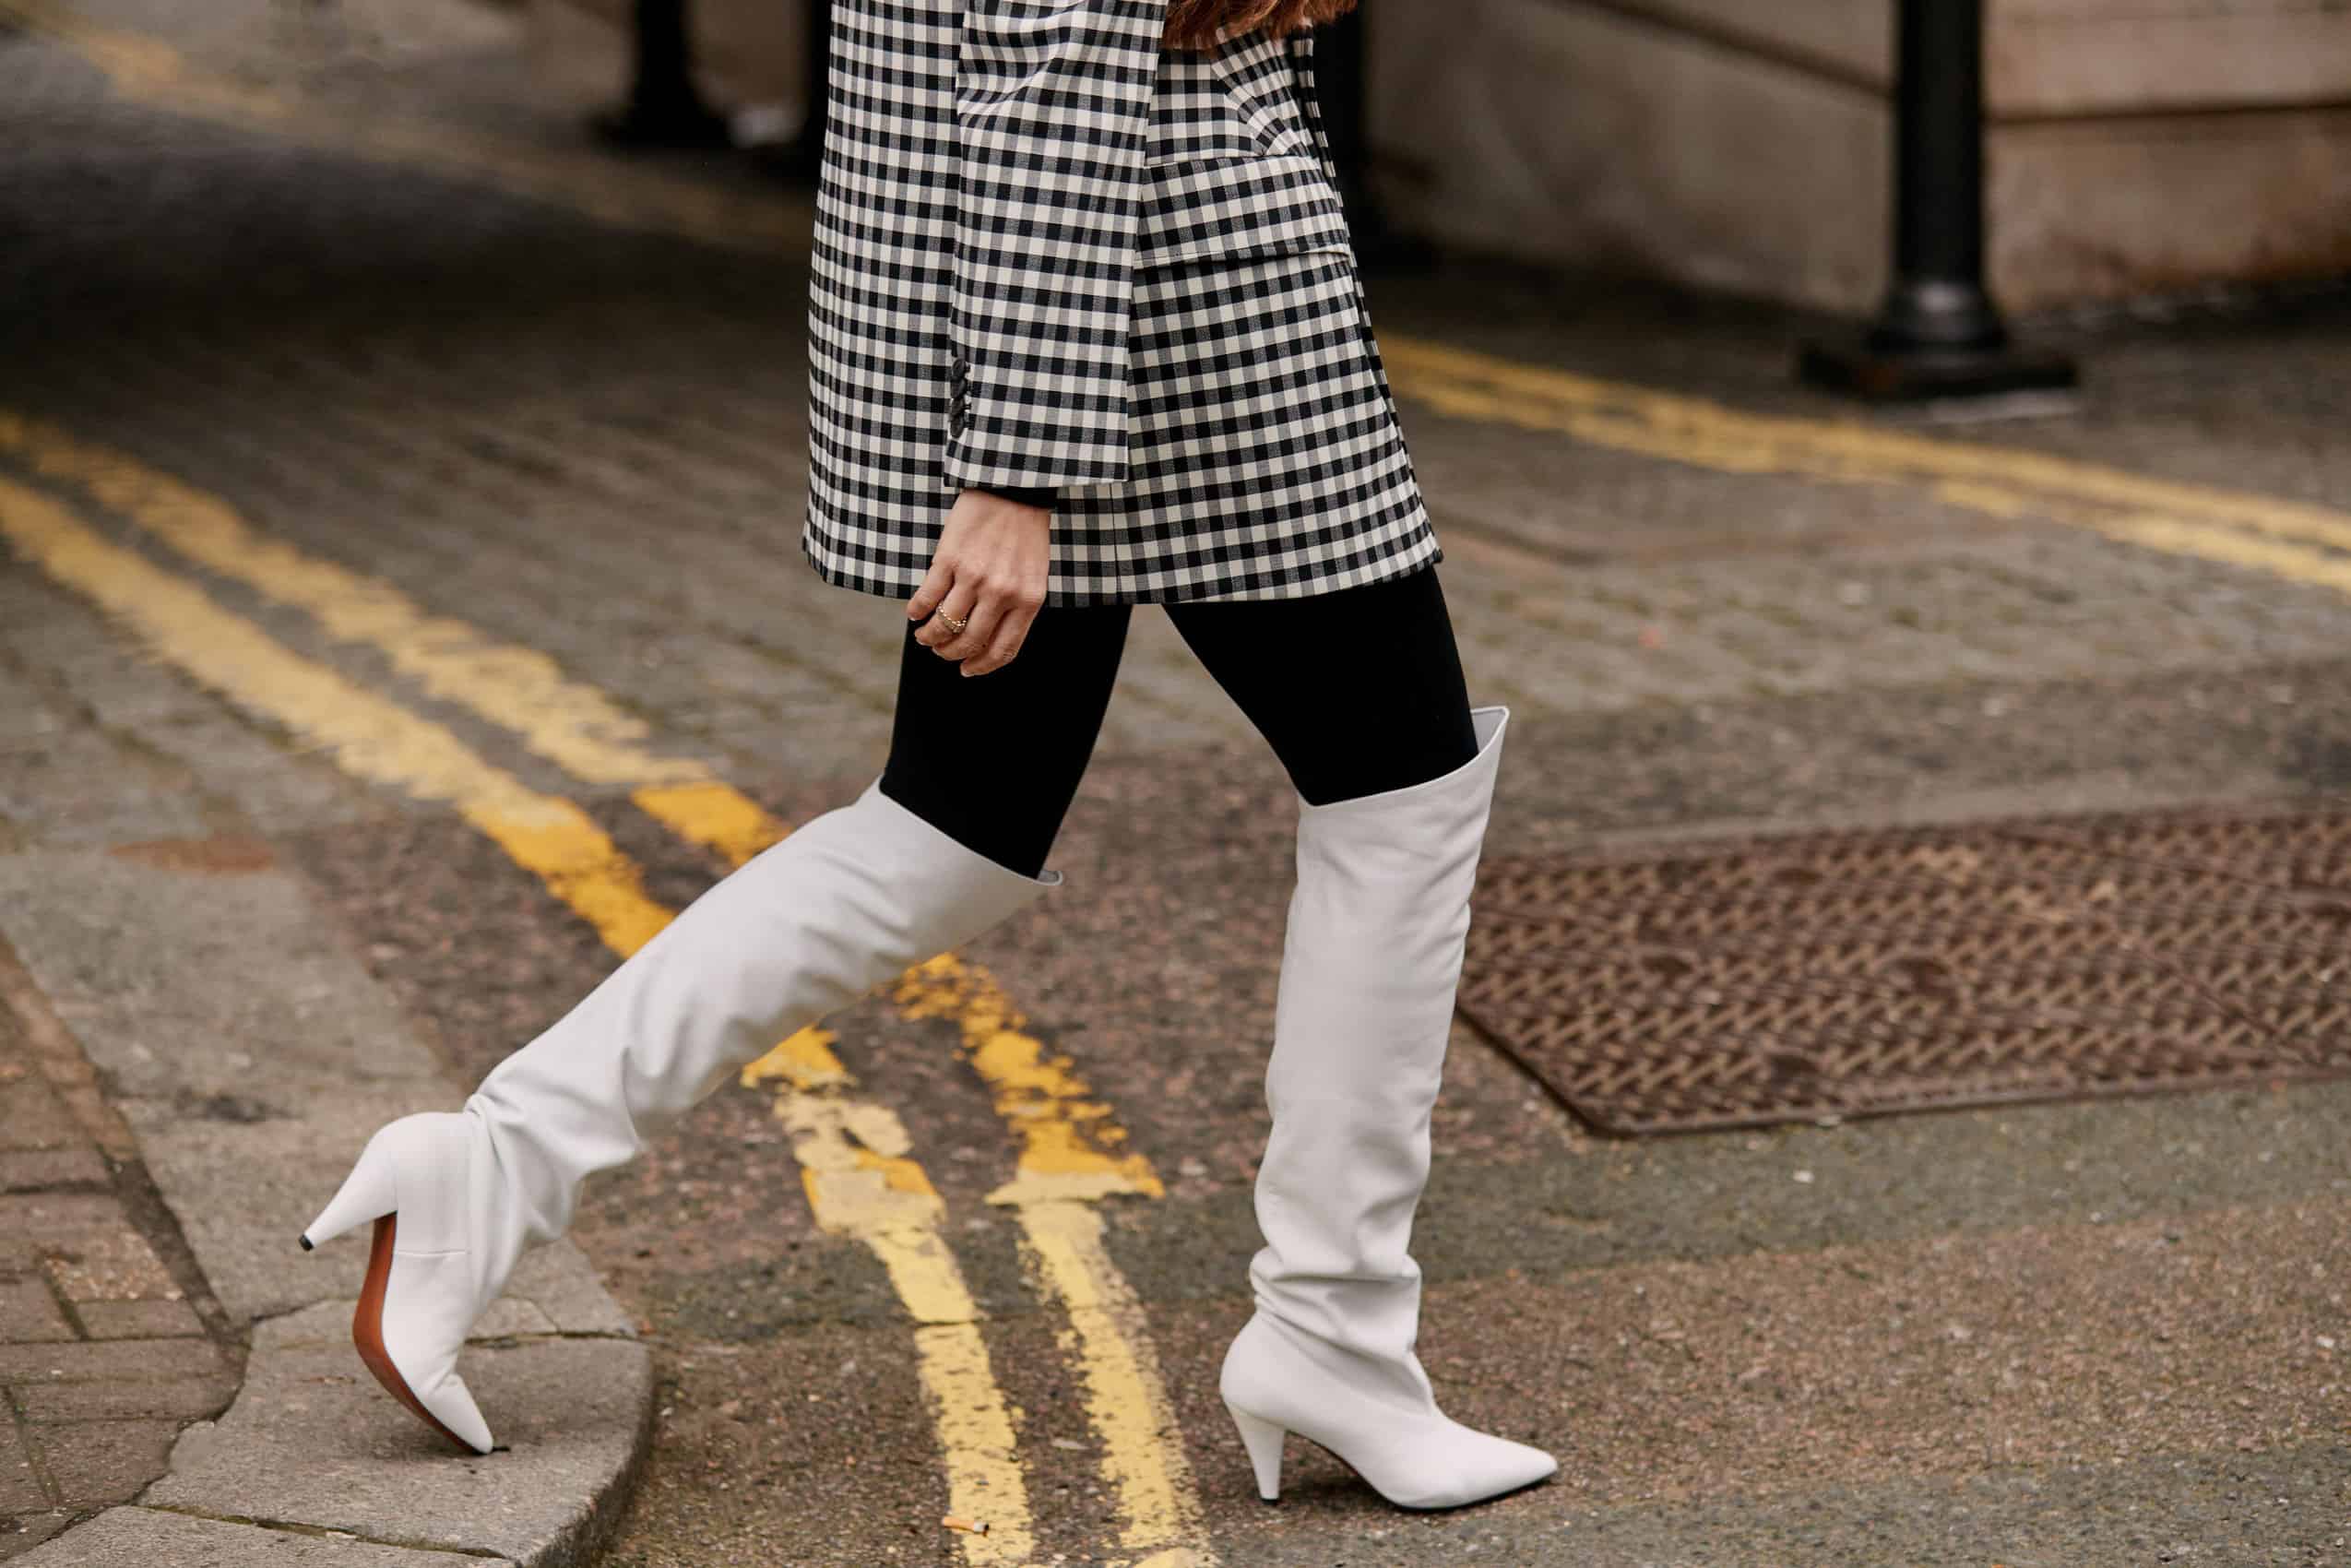 78 Best Street Style Looks From London Fashion Week